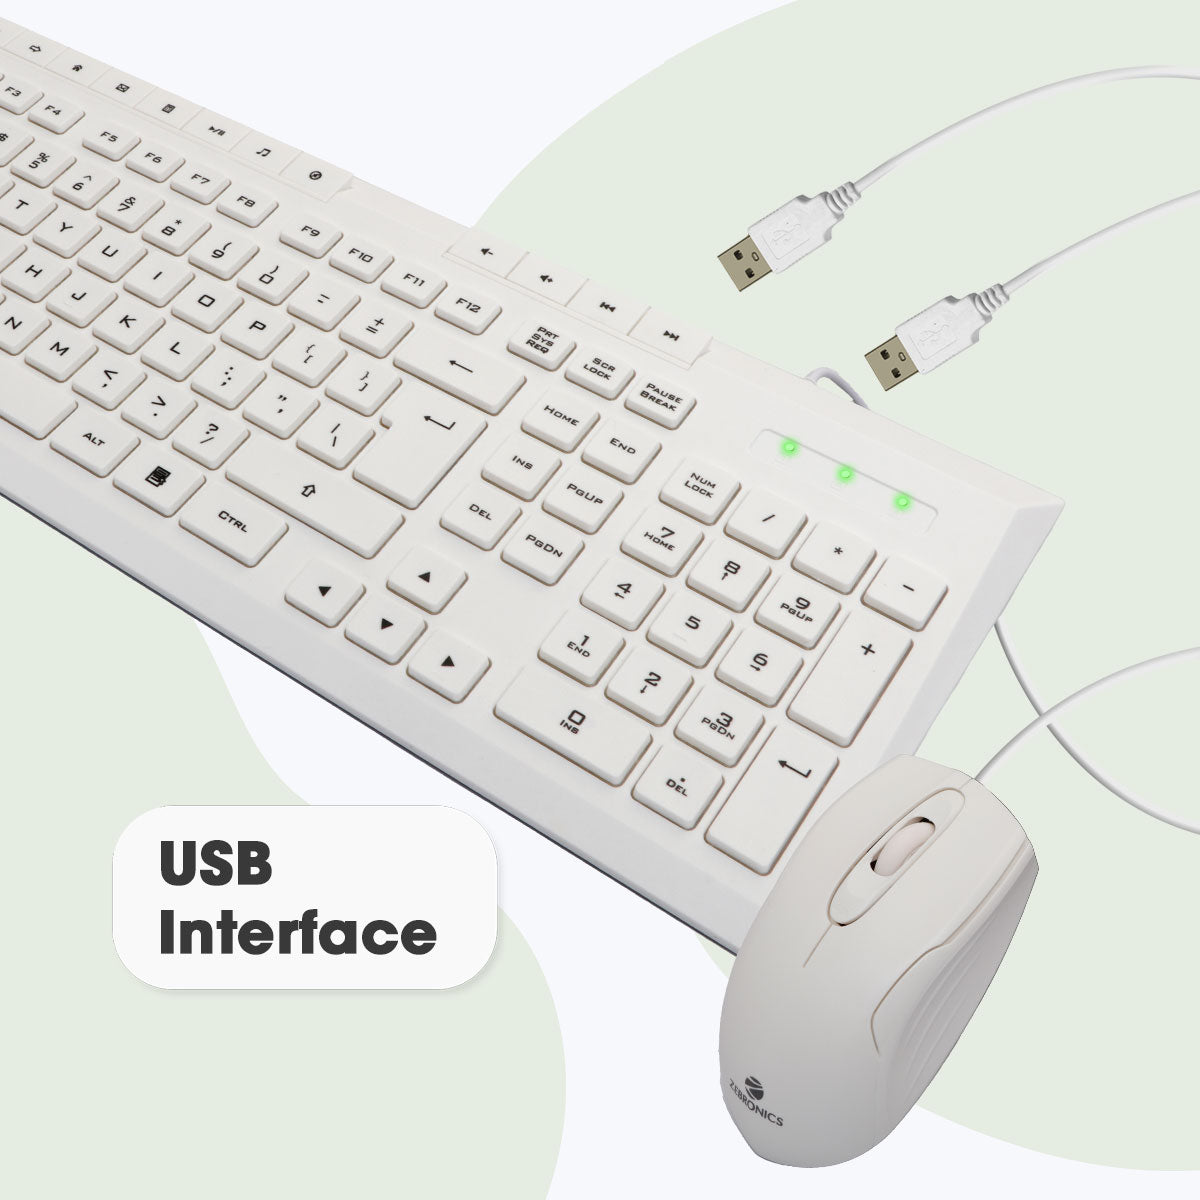 Zeb-Judwaa 900 - Keyboard and Mouse Combo - Zebronics